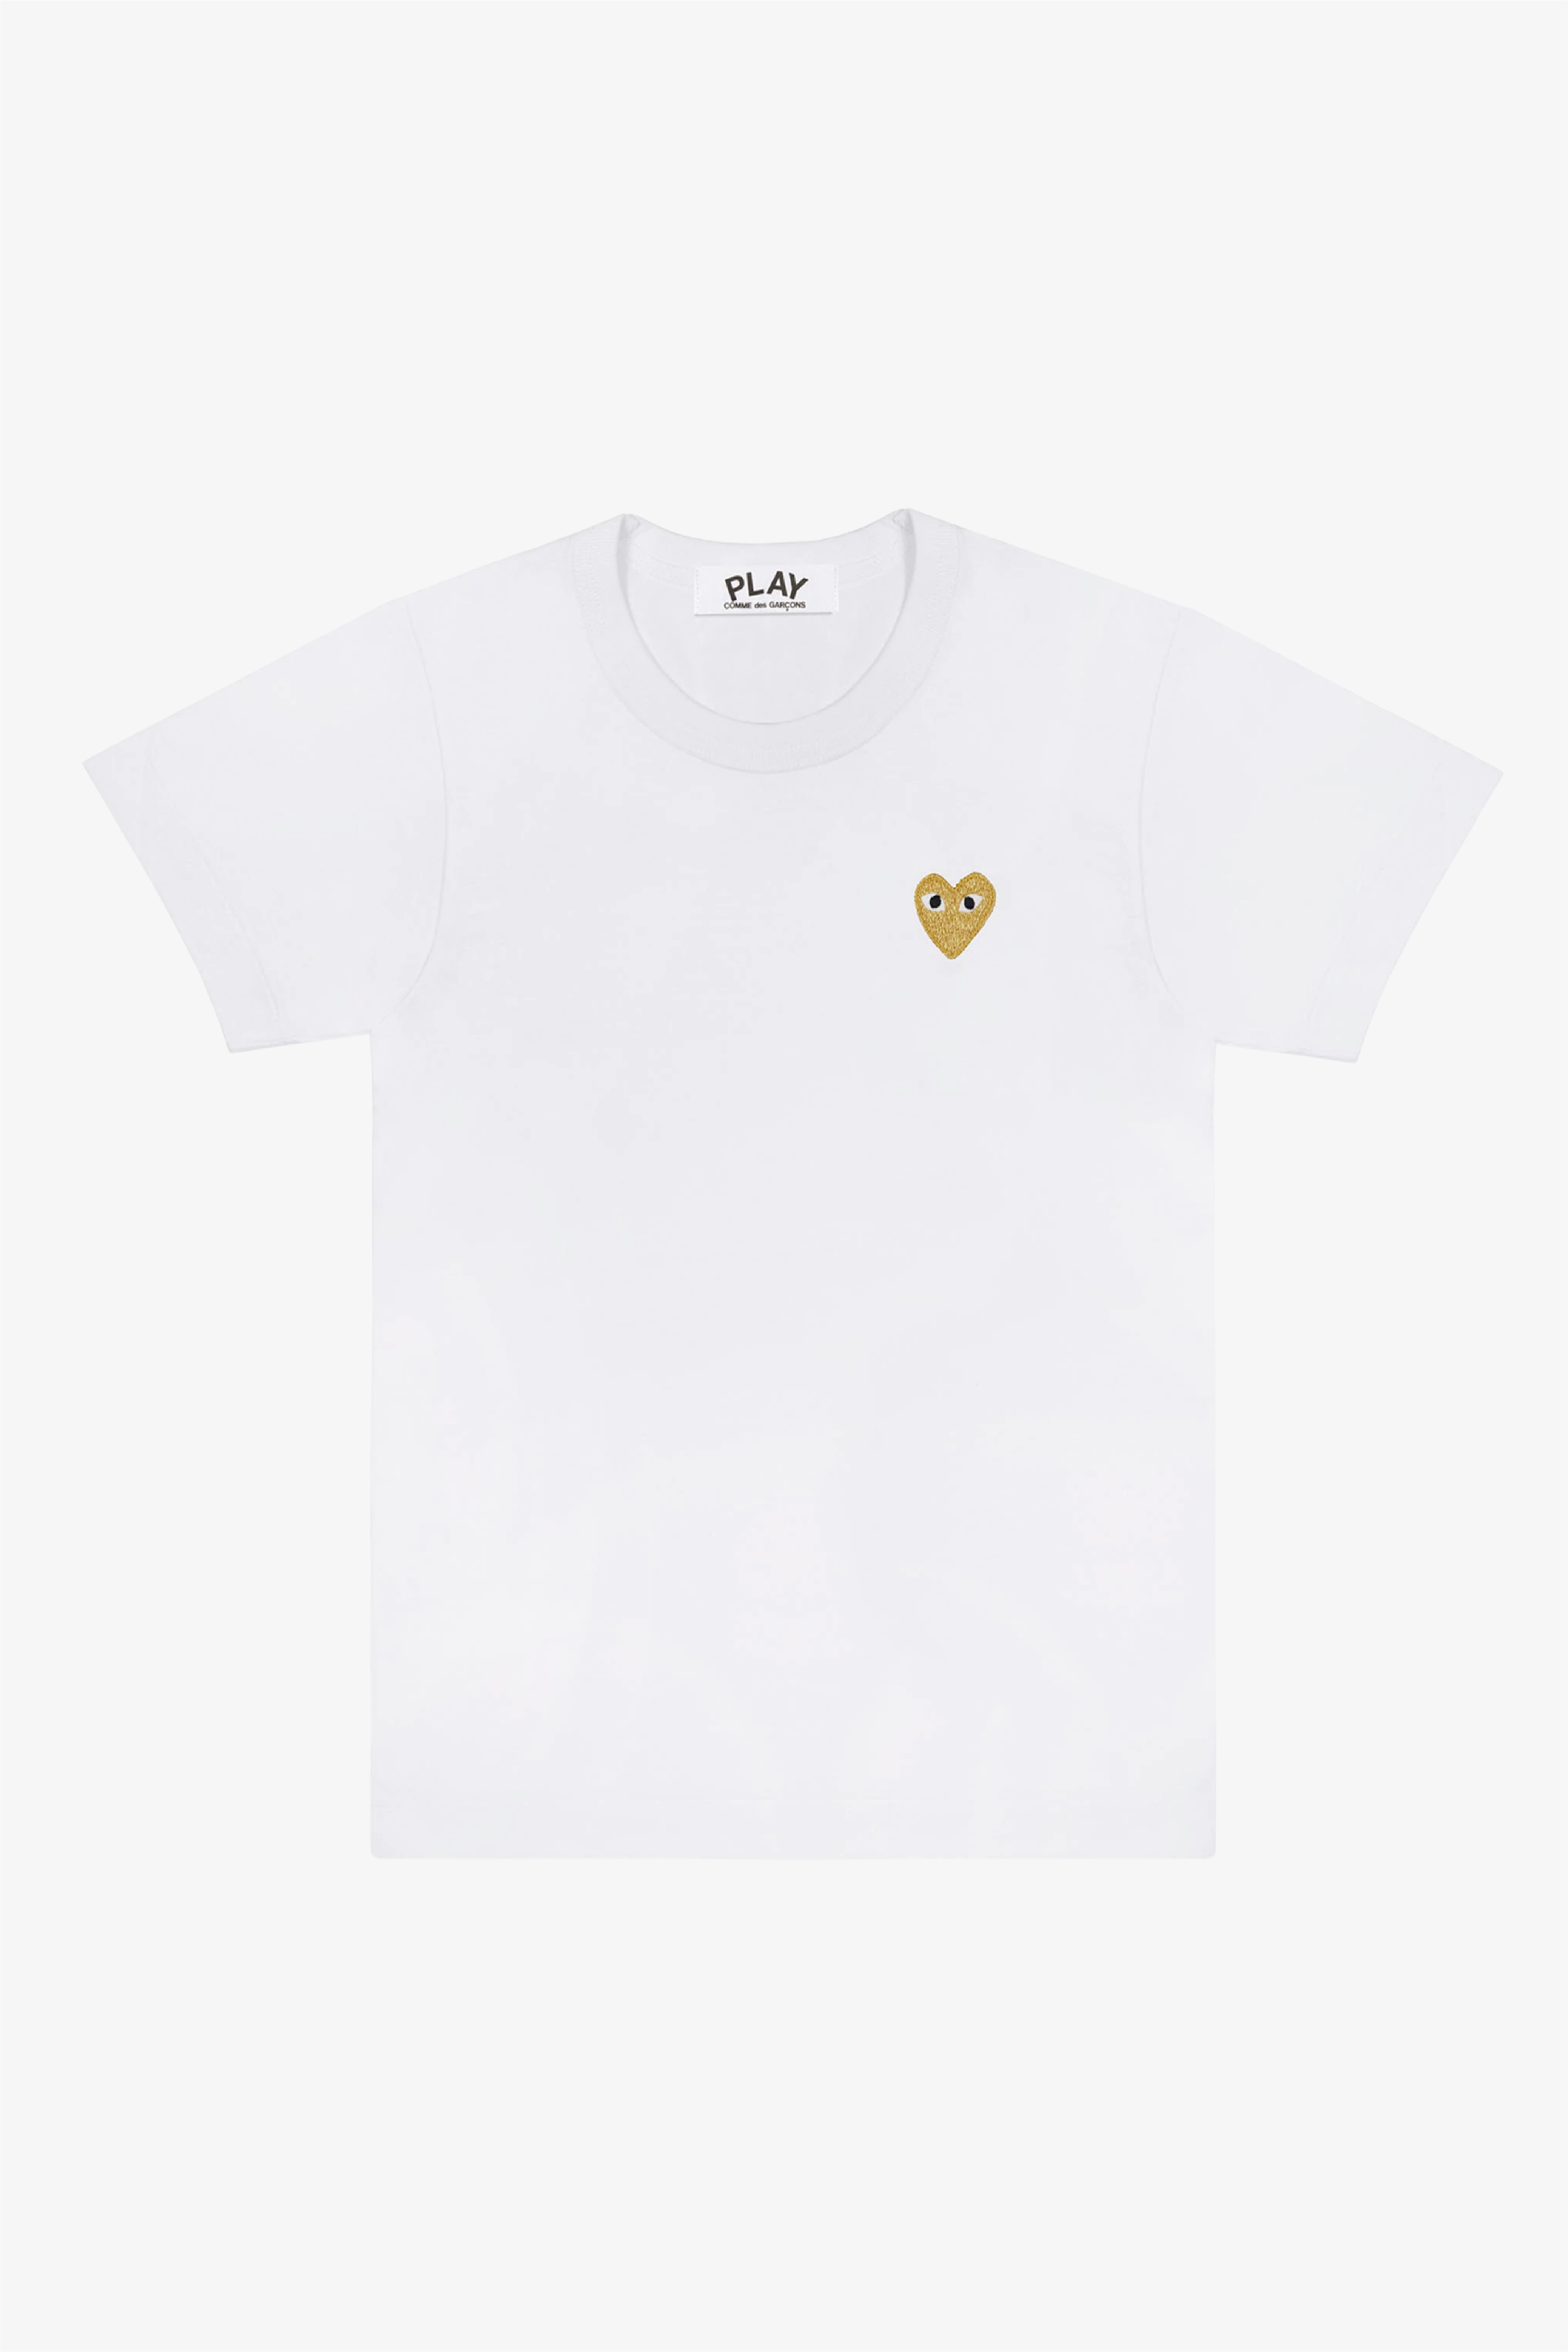 Selectshop FRAME - COMME DES GARCONS PLAY Gold Heart Men's T-Shirt T-Shirts Dubai